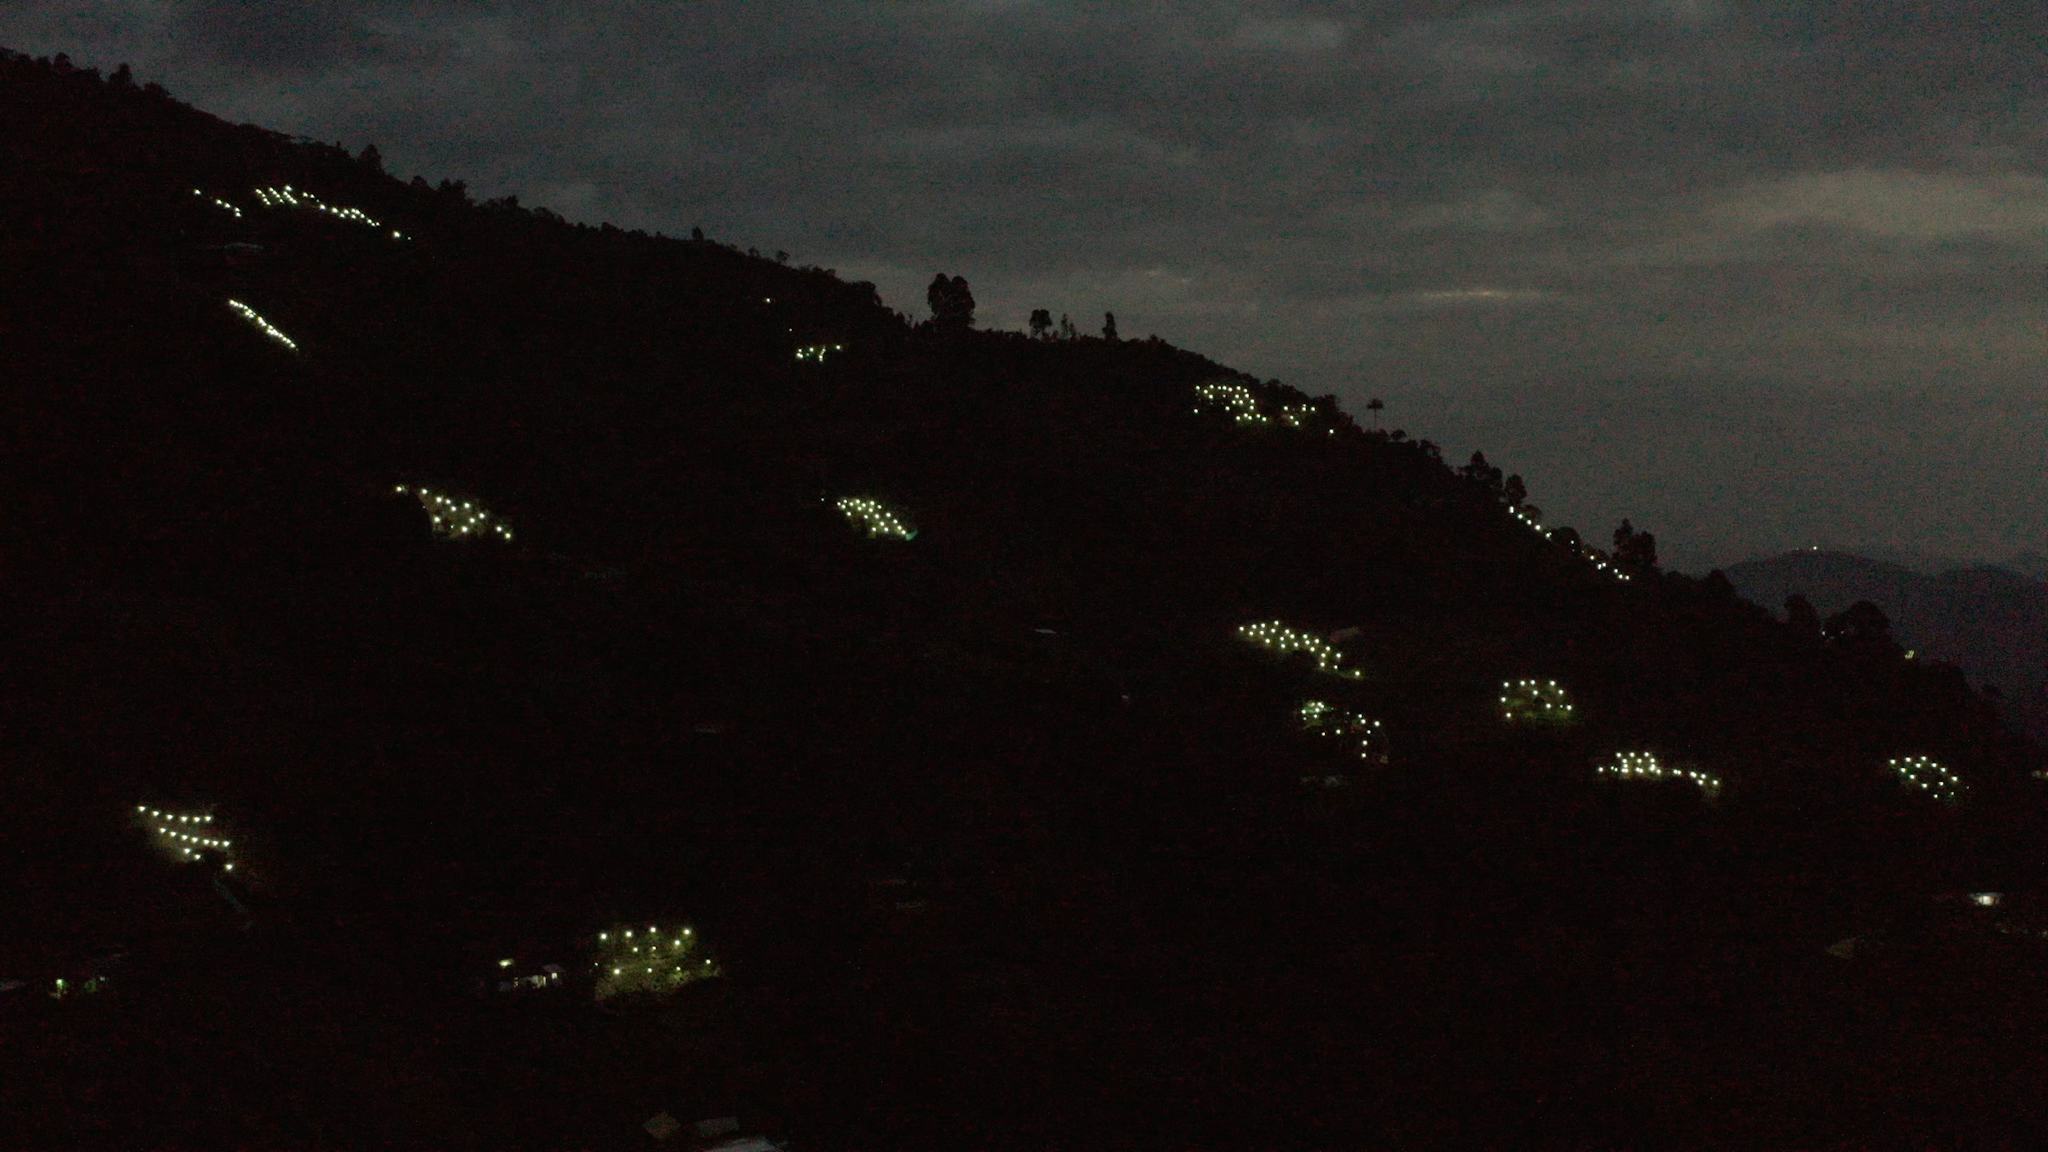 Små kluster av ljus syns utspridda på en bergssluttning. Det är lampor för odlingar av koka och marijuana. I bakgrunden syns en mörk natthimmel.